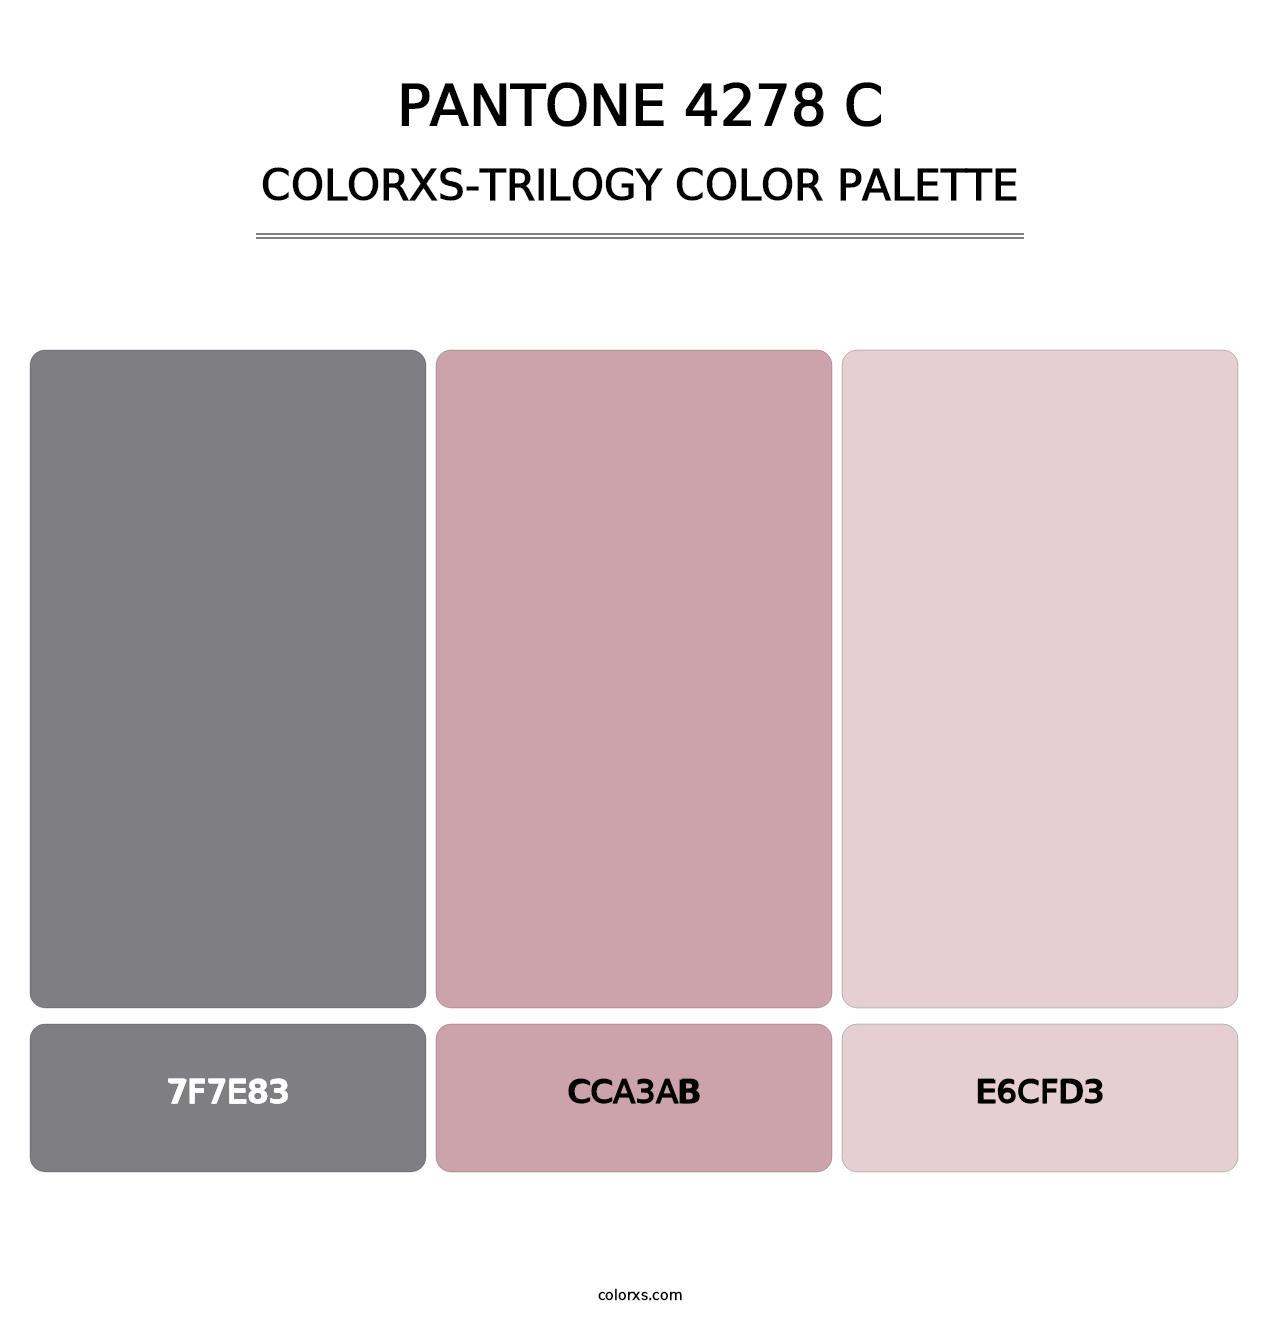 PANTONE 4278 C - Colorxs Trilogy Palette